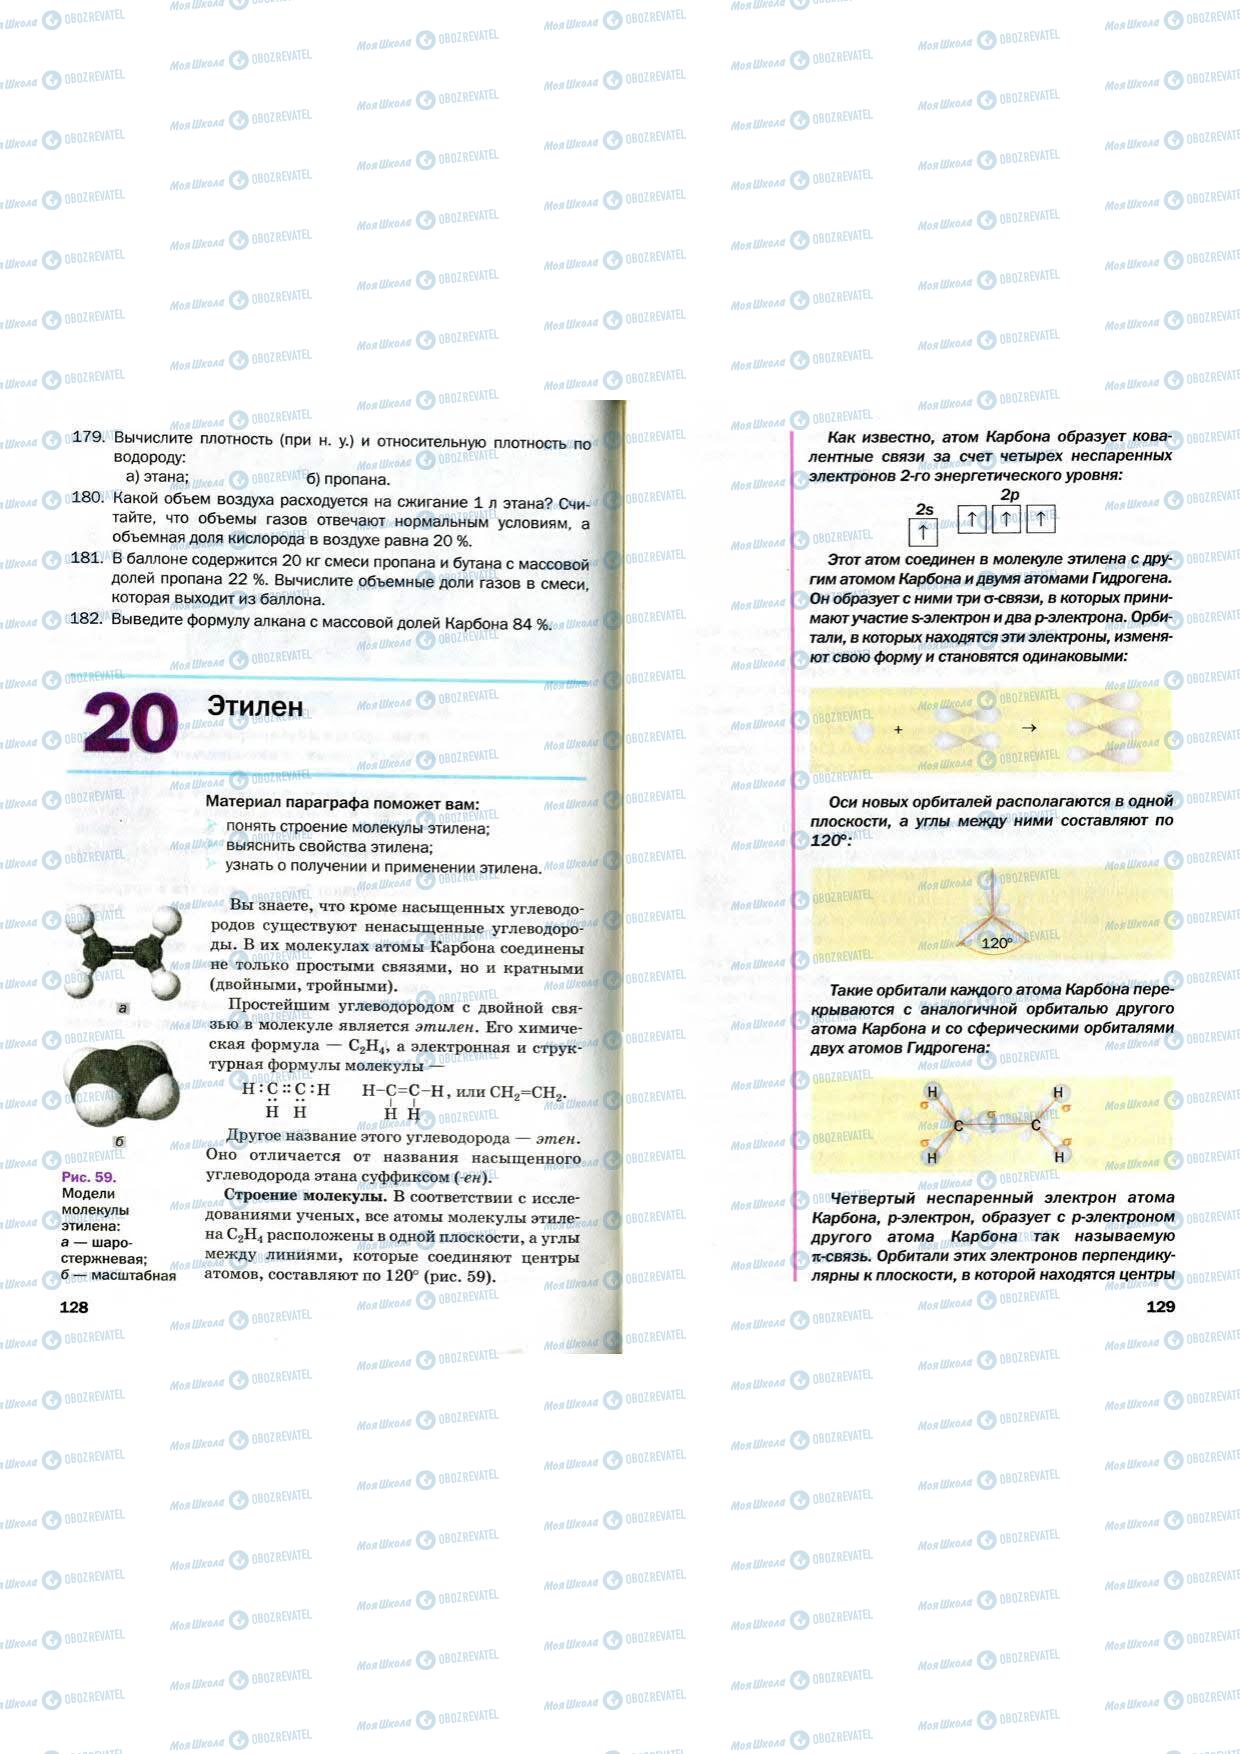 Підручники Хімія 9 клас сторінка 128-129